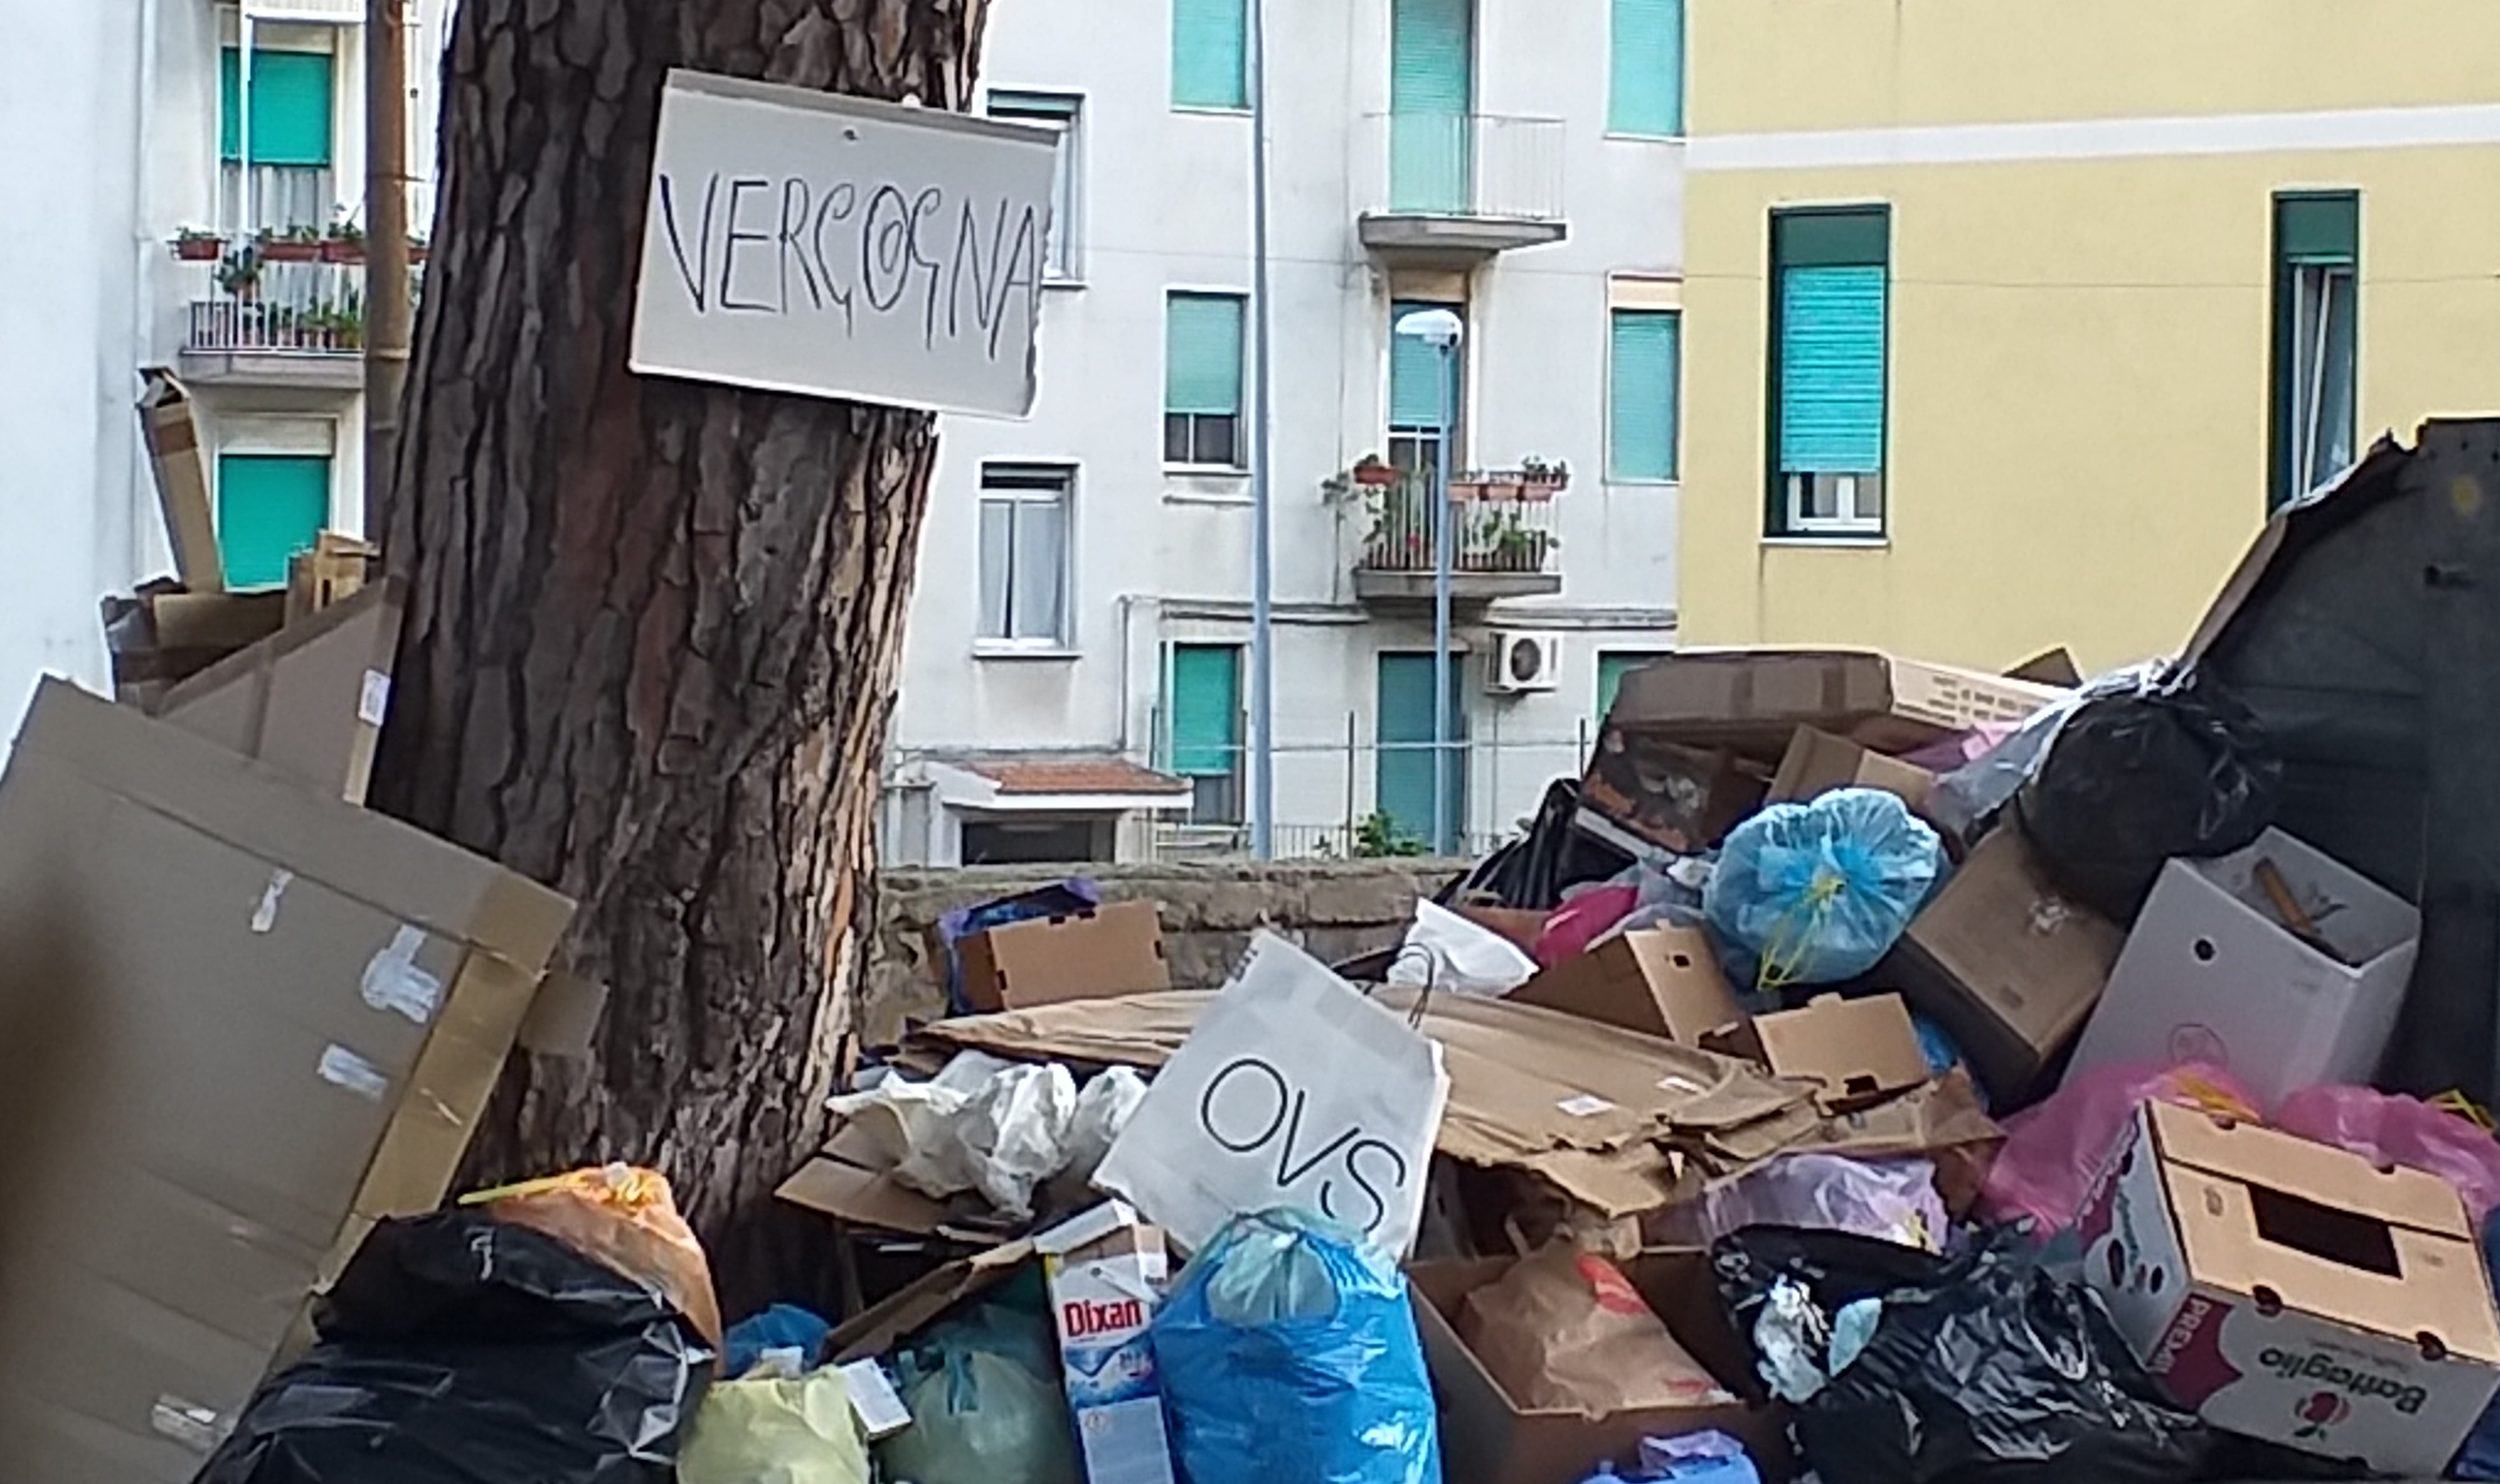 Laimo: "V Quartiere sommerso di spazzatura, situazione inammissibile"